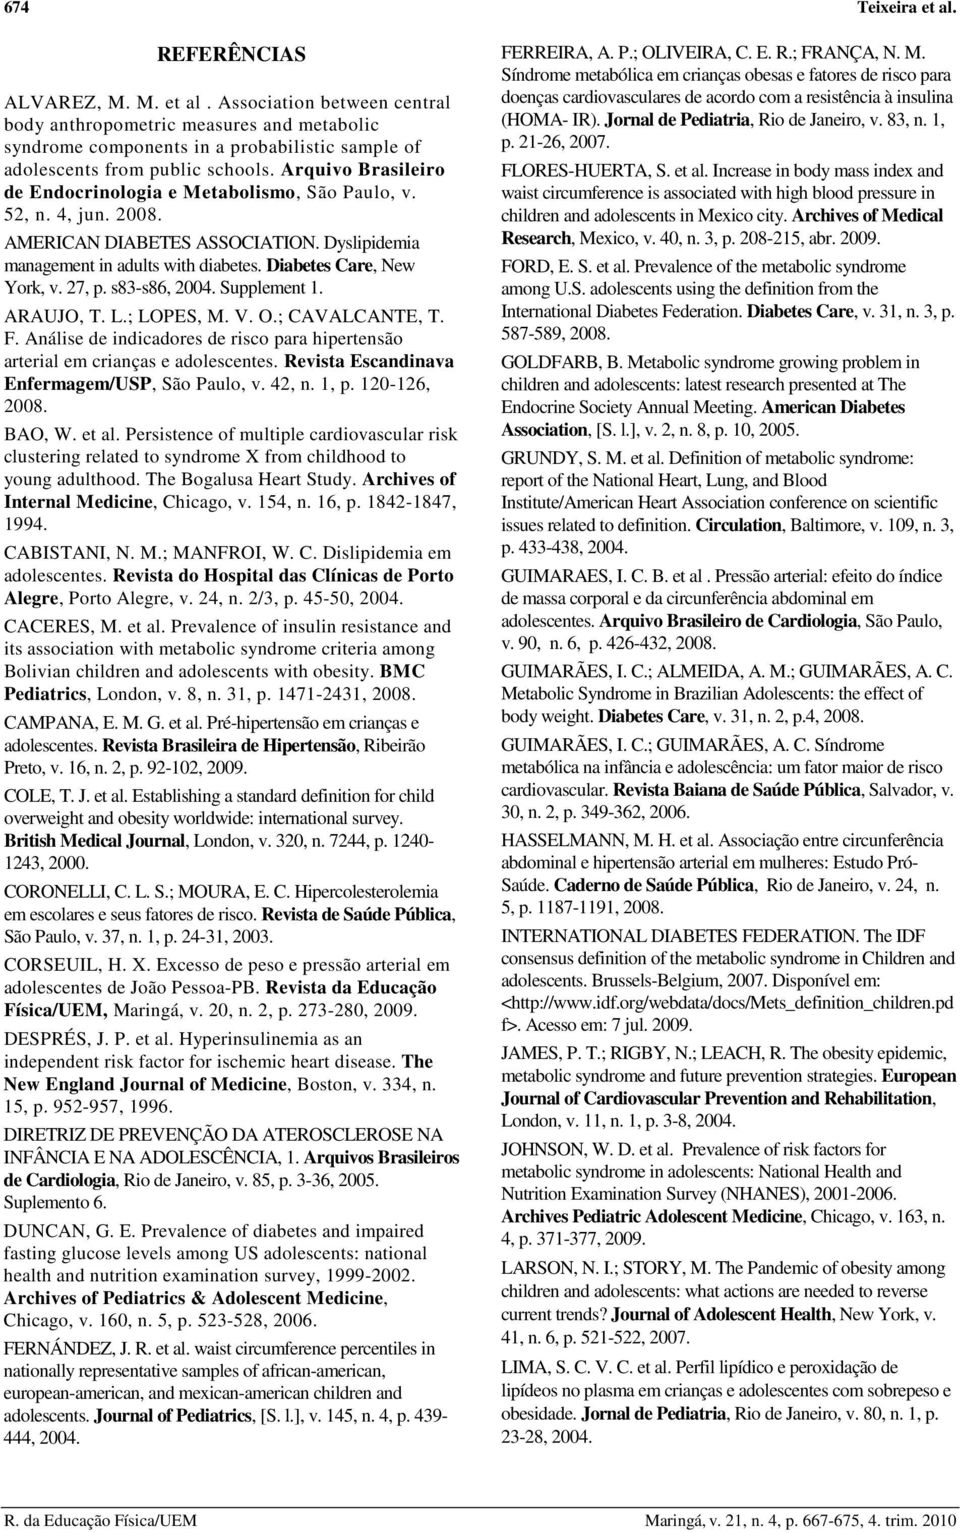 27, p. s83-s86, 2004. Supplement 1. ARAUJO, T. L.; LOPES, M. V. O.; CAVALCANTE, T. F. Análise de indicadores de risco para hipertensão arterial em crianças e adolescentes.